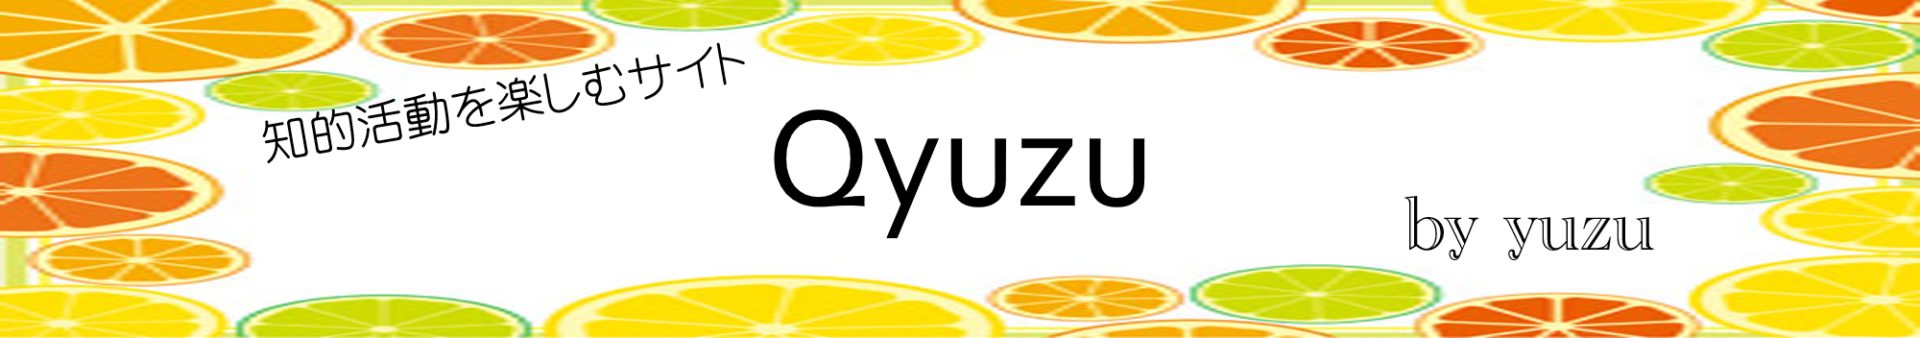 令和2年はうるう年 うるう年クイズ Qyuzu